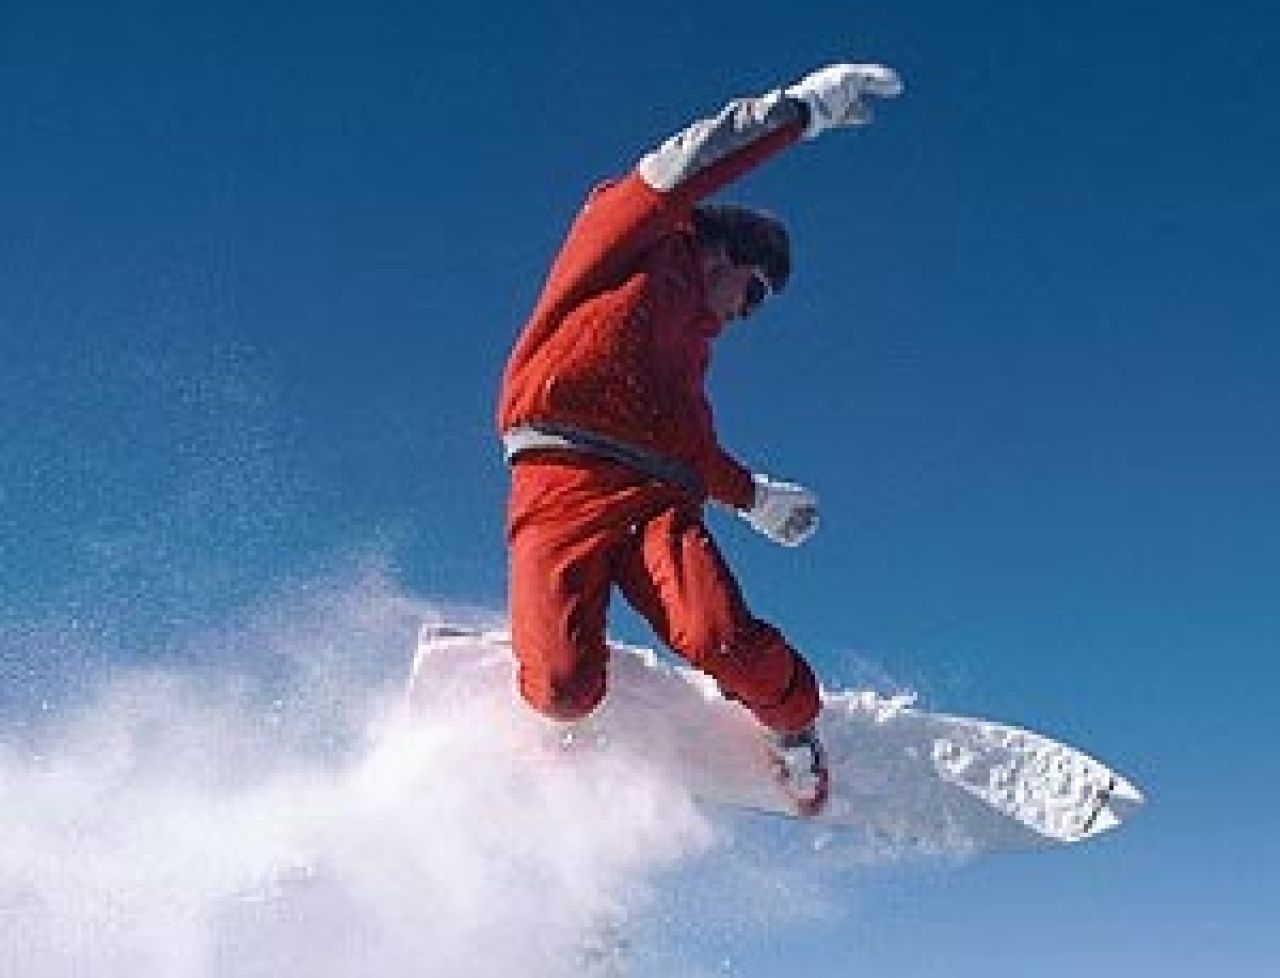 Ćwiczenia dla snowboarderów – cz. II